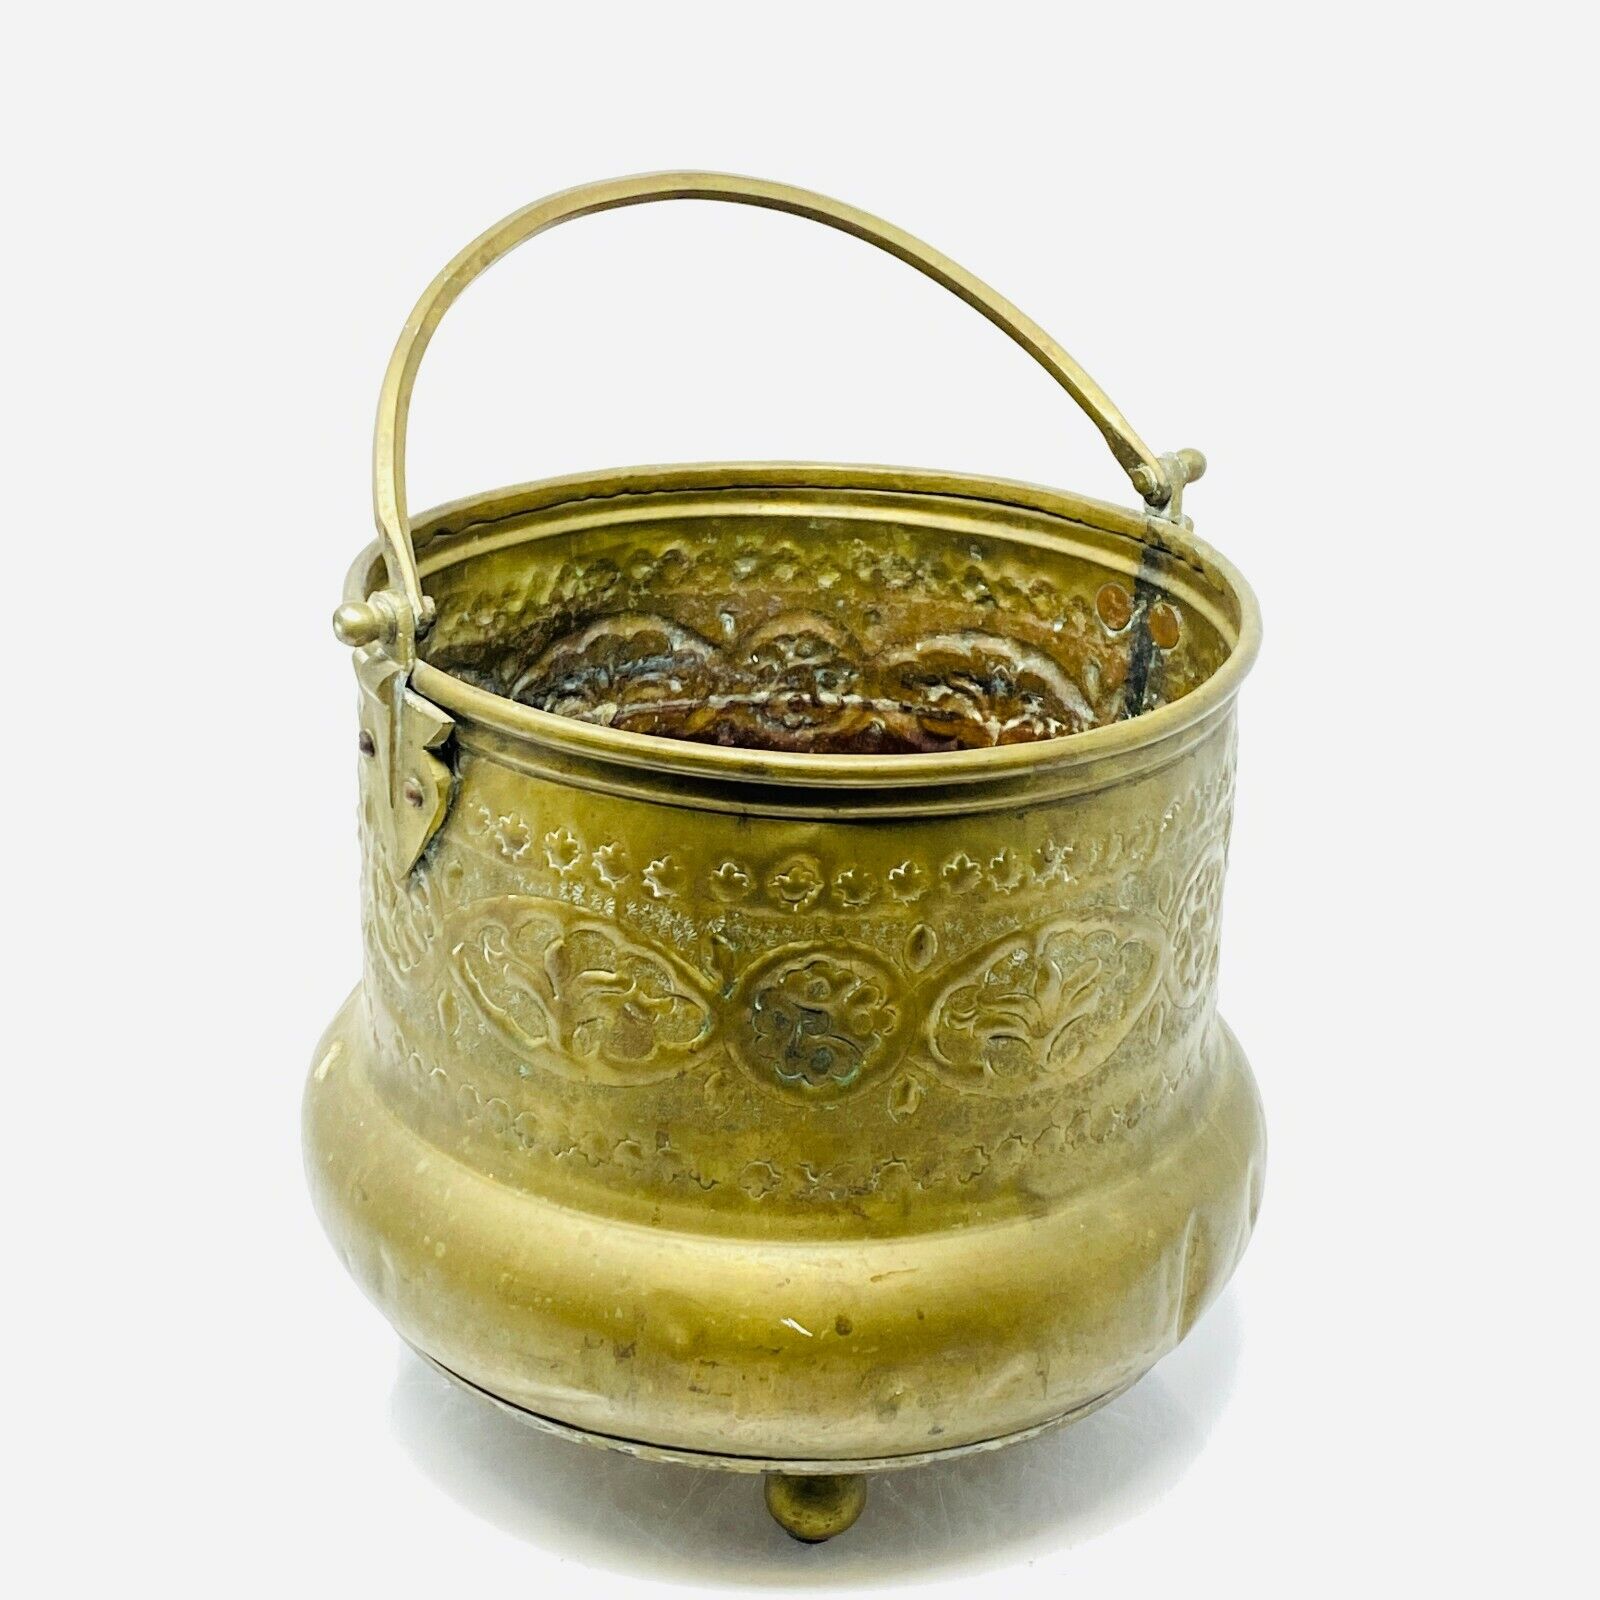 Vintage Handheld Incense Burner Metal Urn Bowl Pot w/Floral Patterns 8 inches